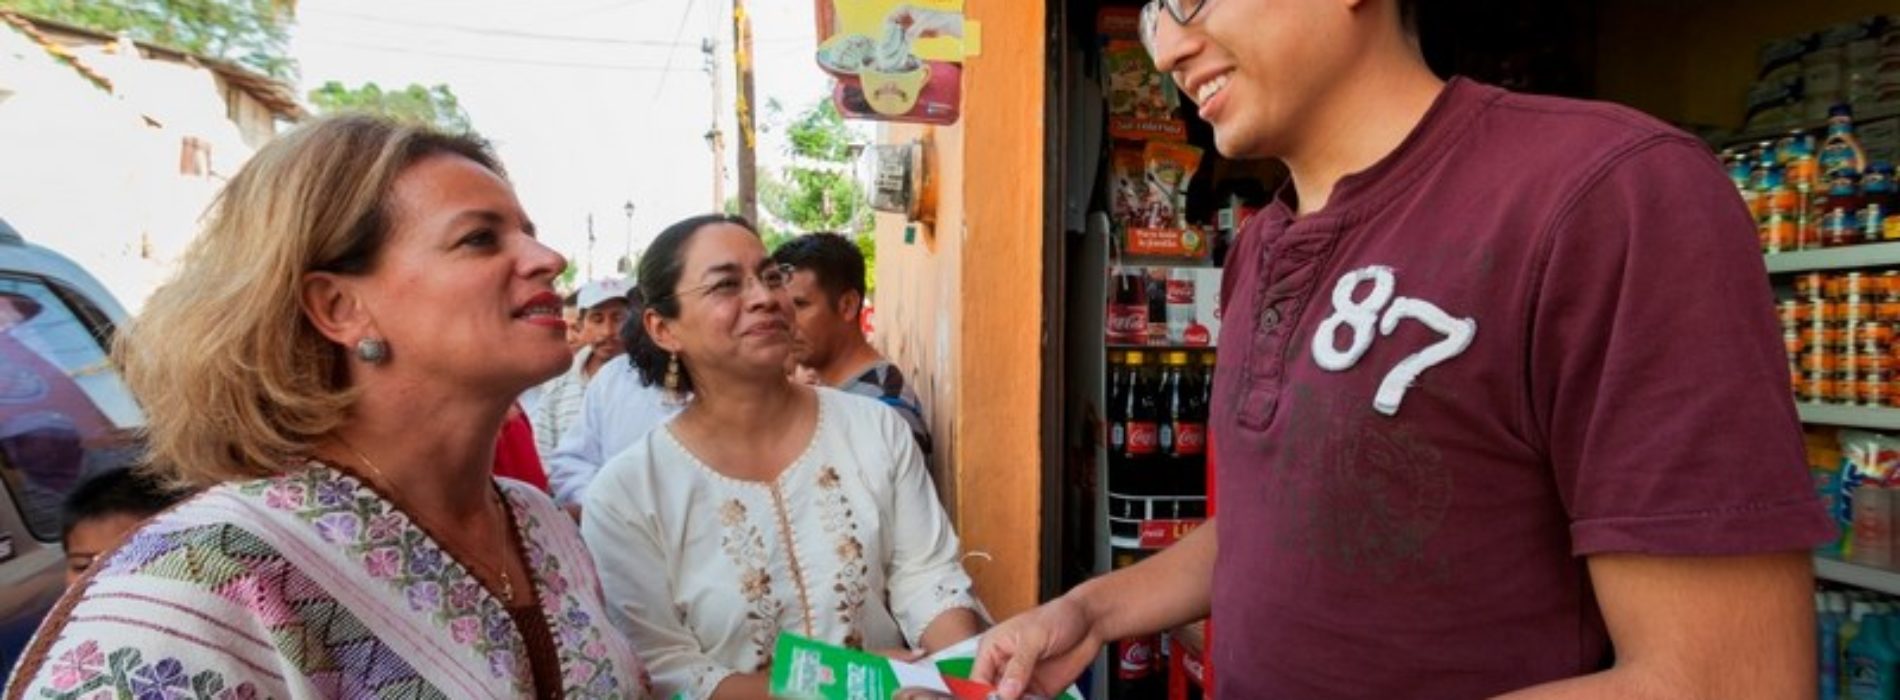 @TitiRoC #Oaxaca Beatriz Rodríguez generará recursos para mejorar la calidad de vida de las familias oaxaqueñas